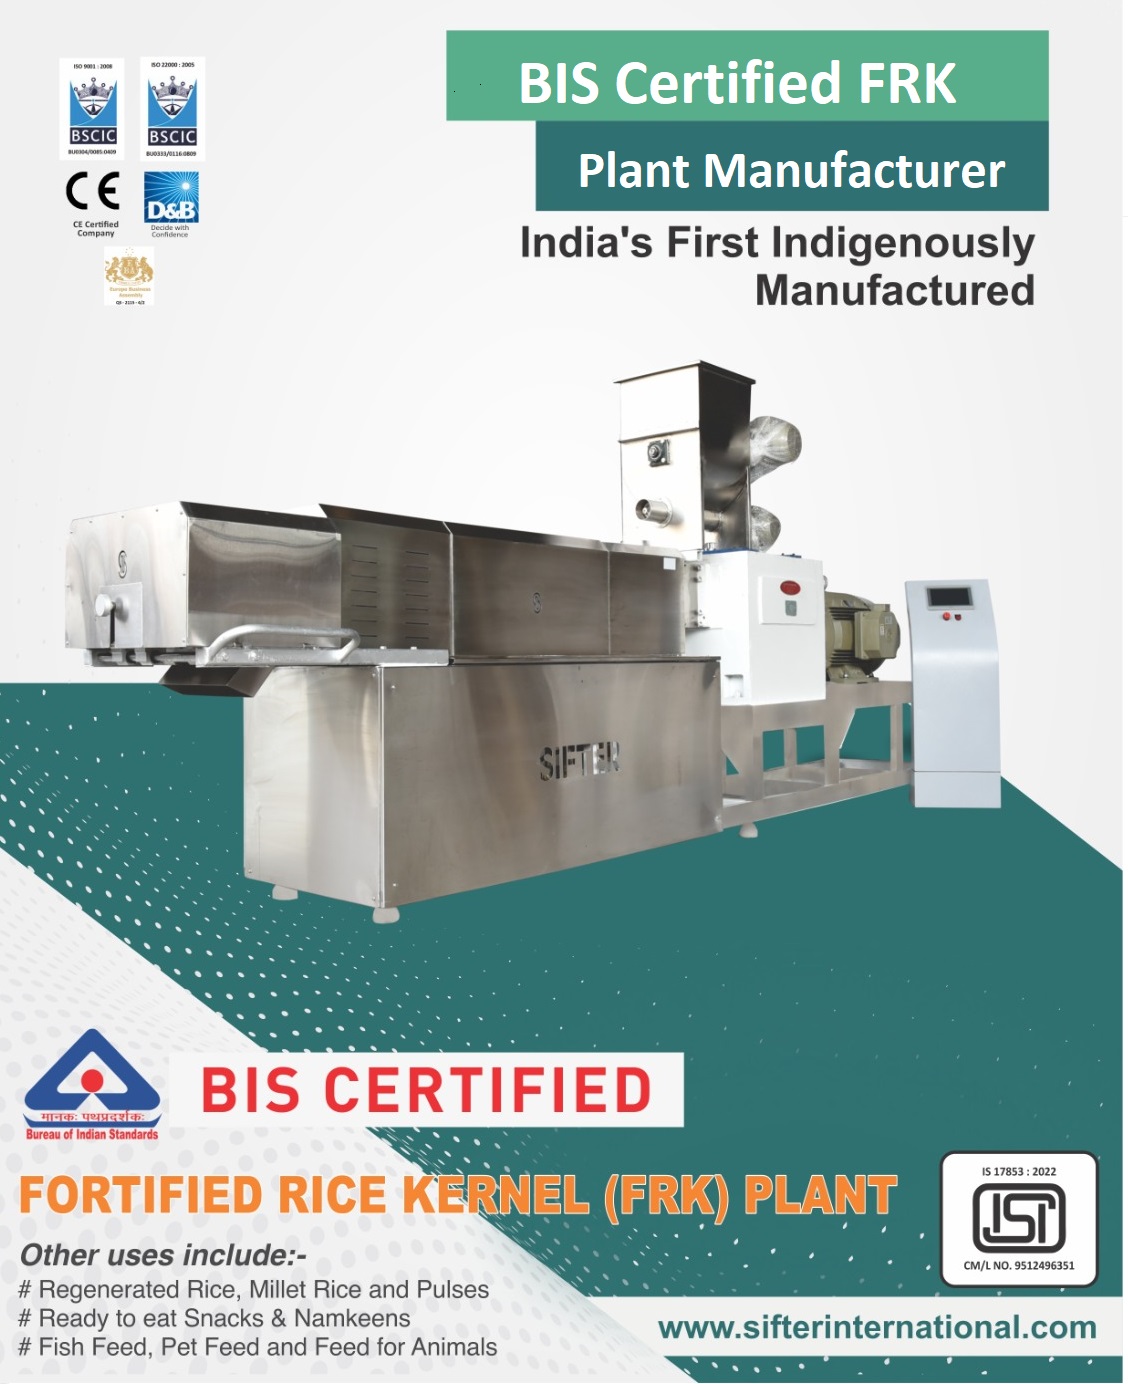 BIS Certified FRK Plant Manufacturer